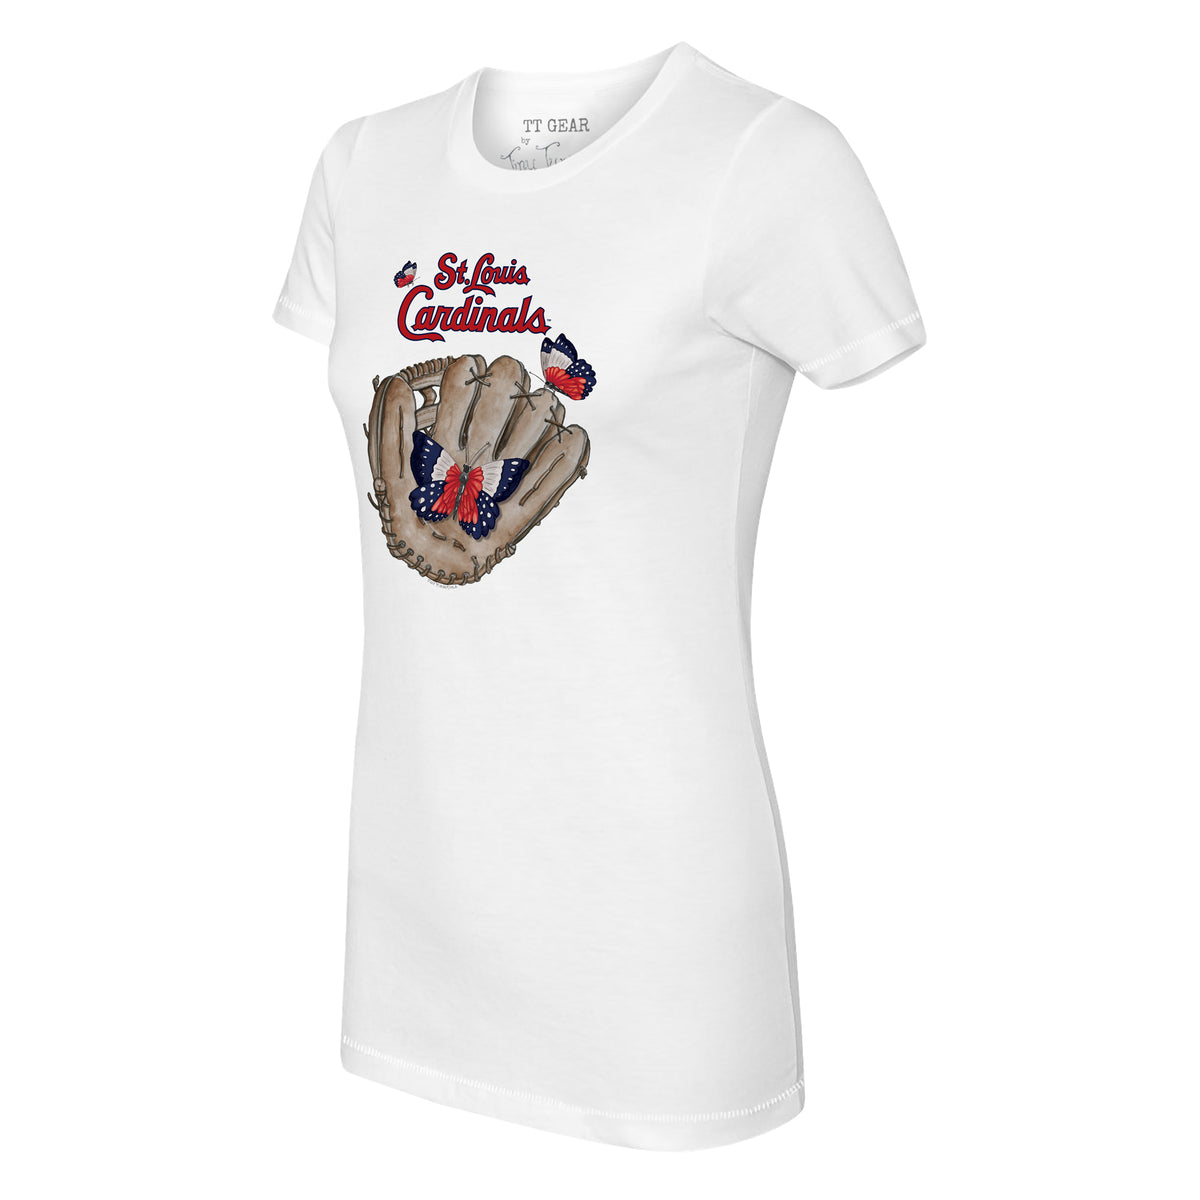 St. Louis Cardinals Butterfly Glove Tee Shirt